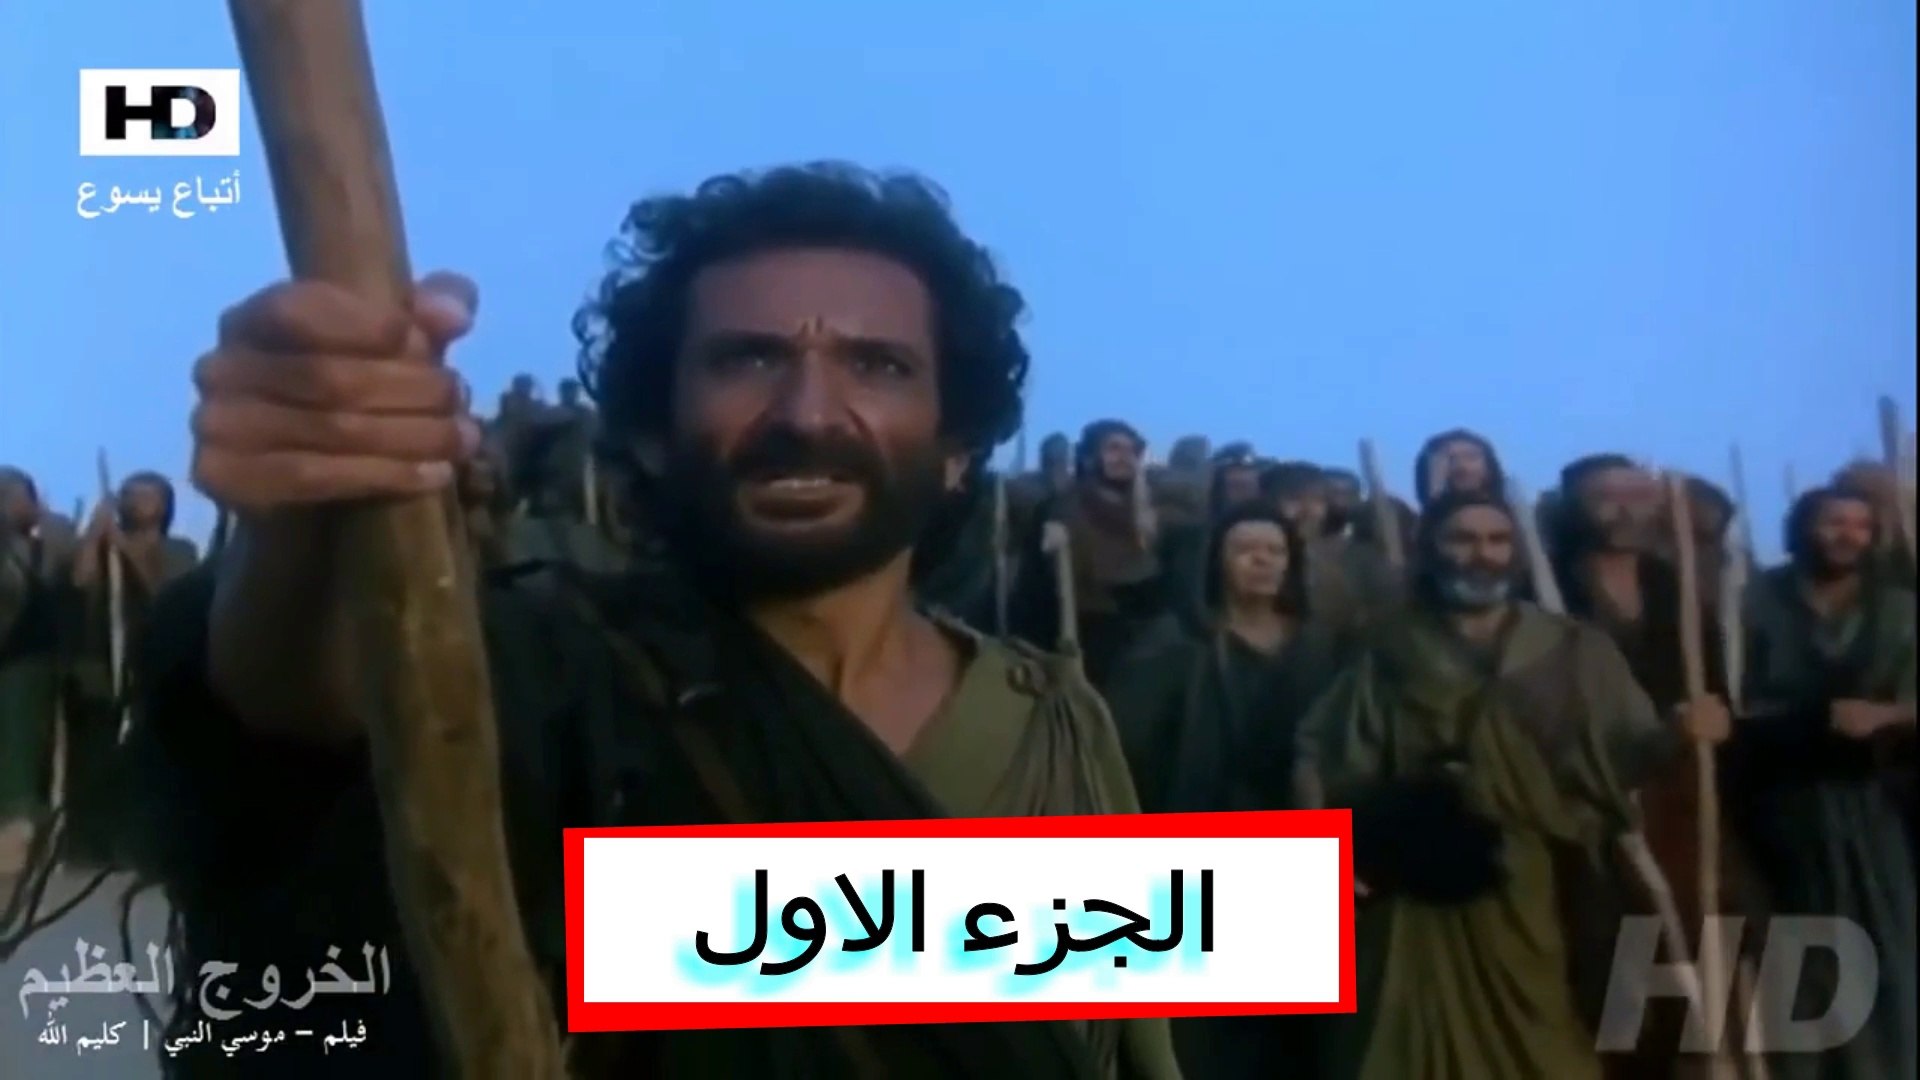 فيلم موسى النبي كليم الله | Movie Moses Arabic Egyptian | HD الجزء الاول -  فيديو Dailymotion